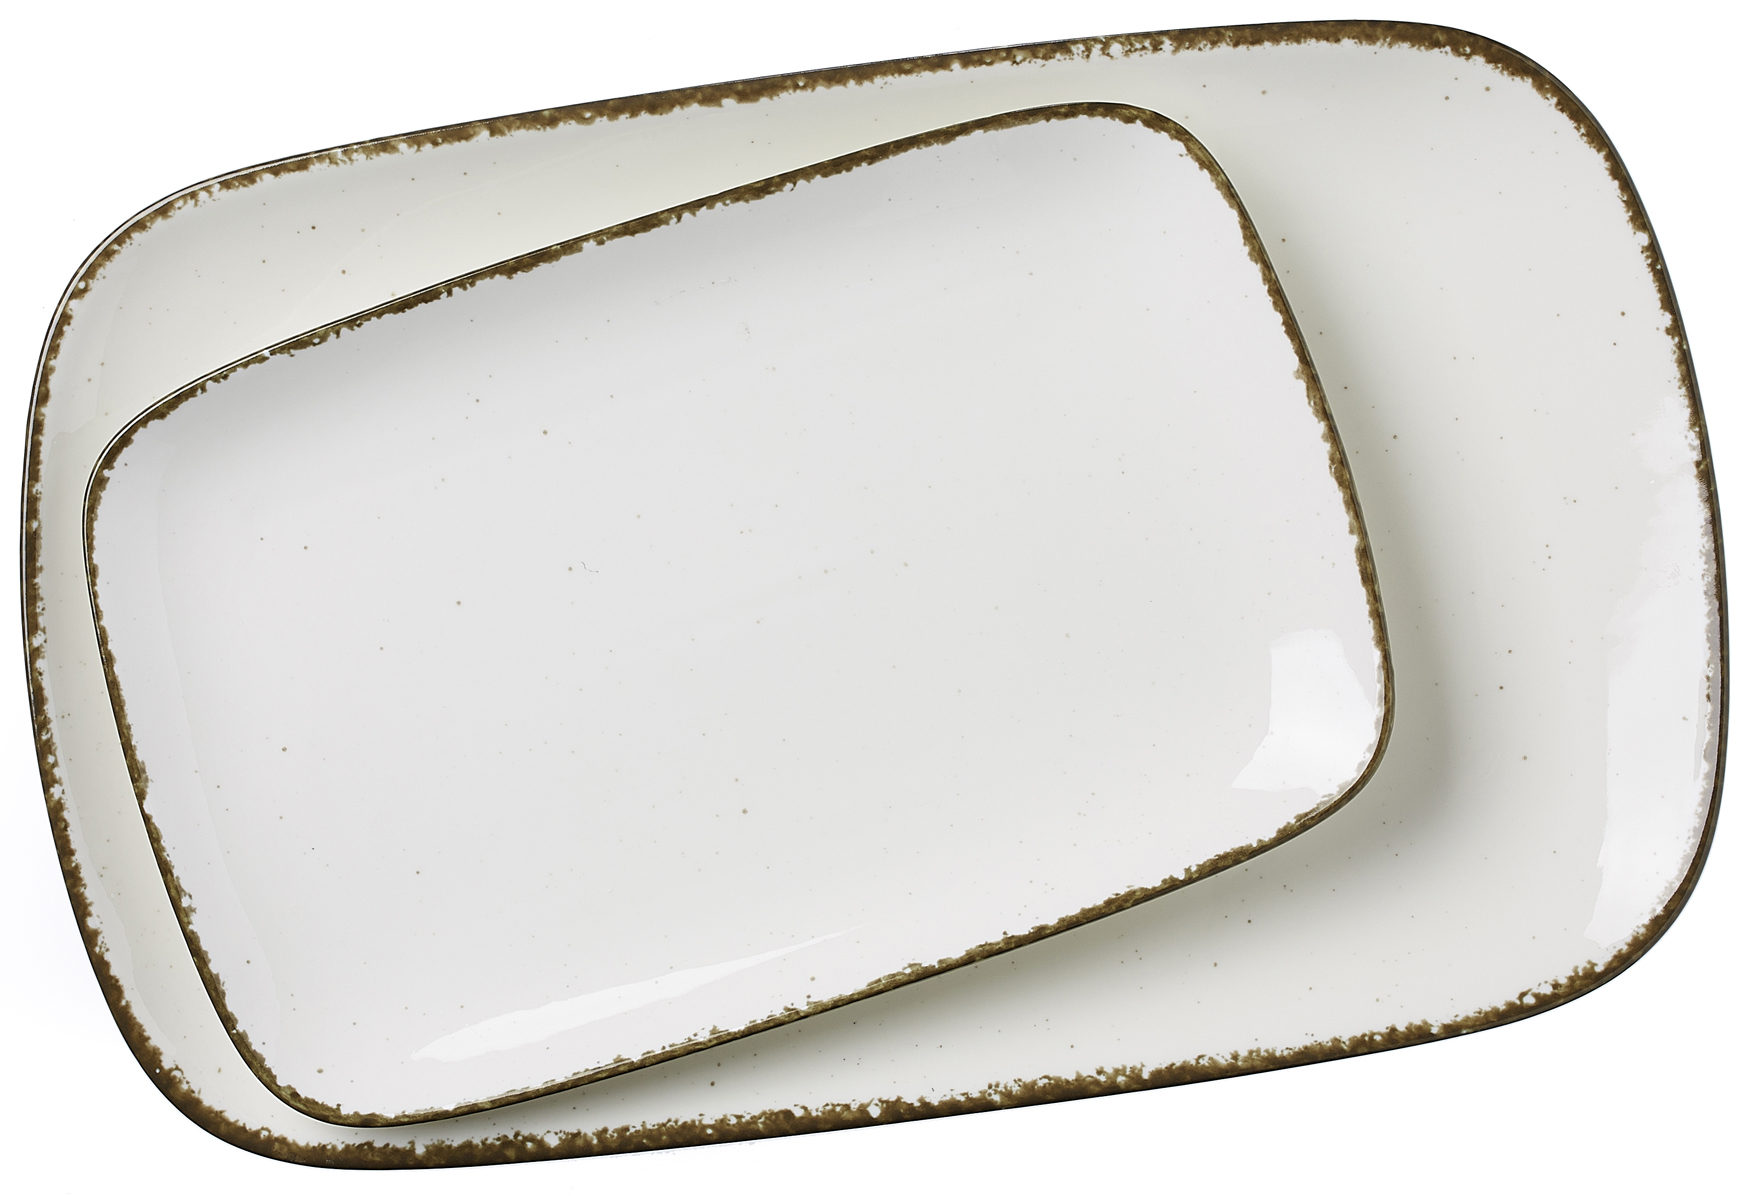 Tafelservice Ritzenhoff & breker aus Porzellan in Beige Servierplatten Casa beiges Porzellan - 2-teilig, Platten